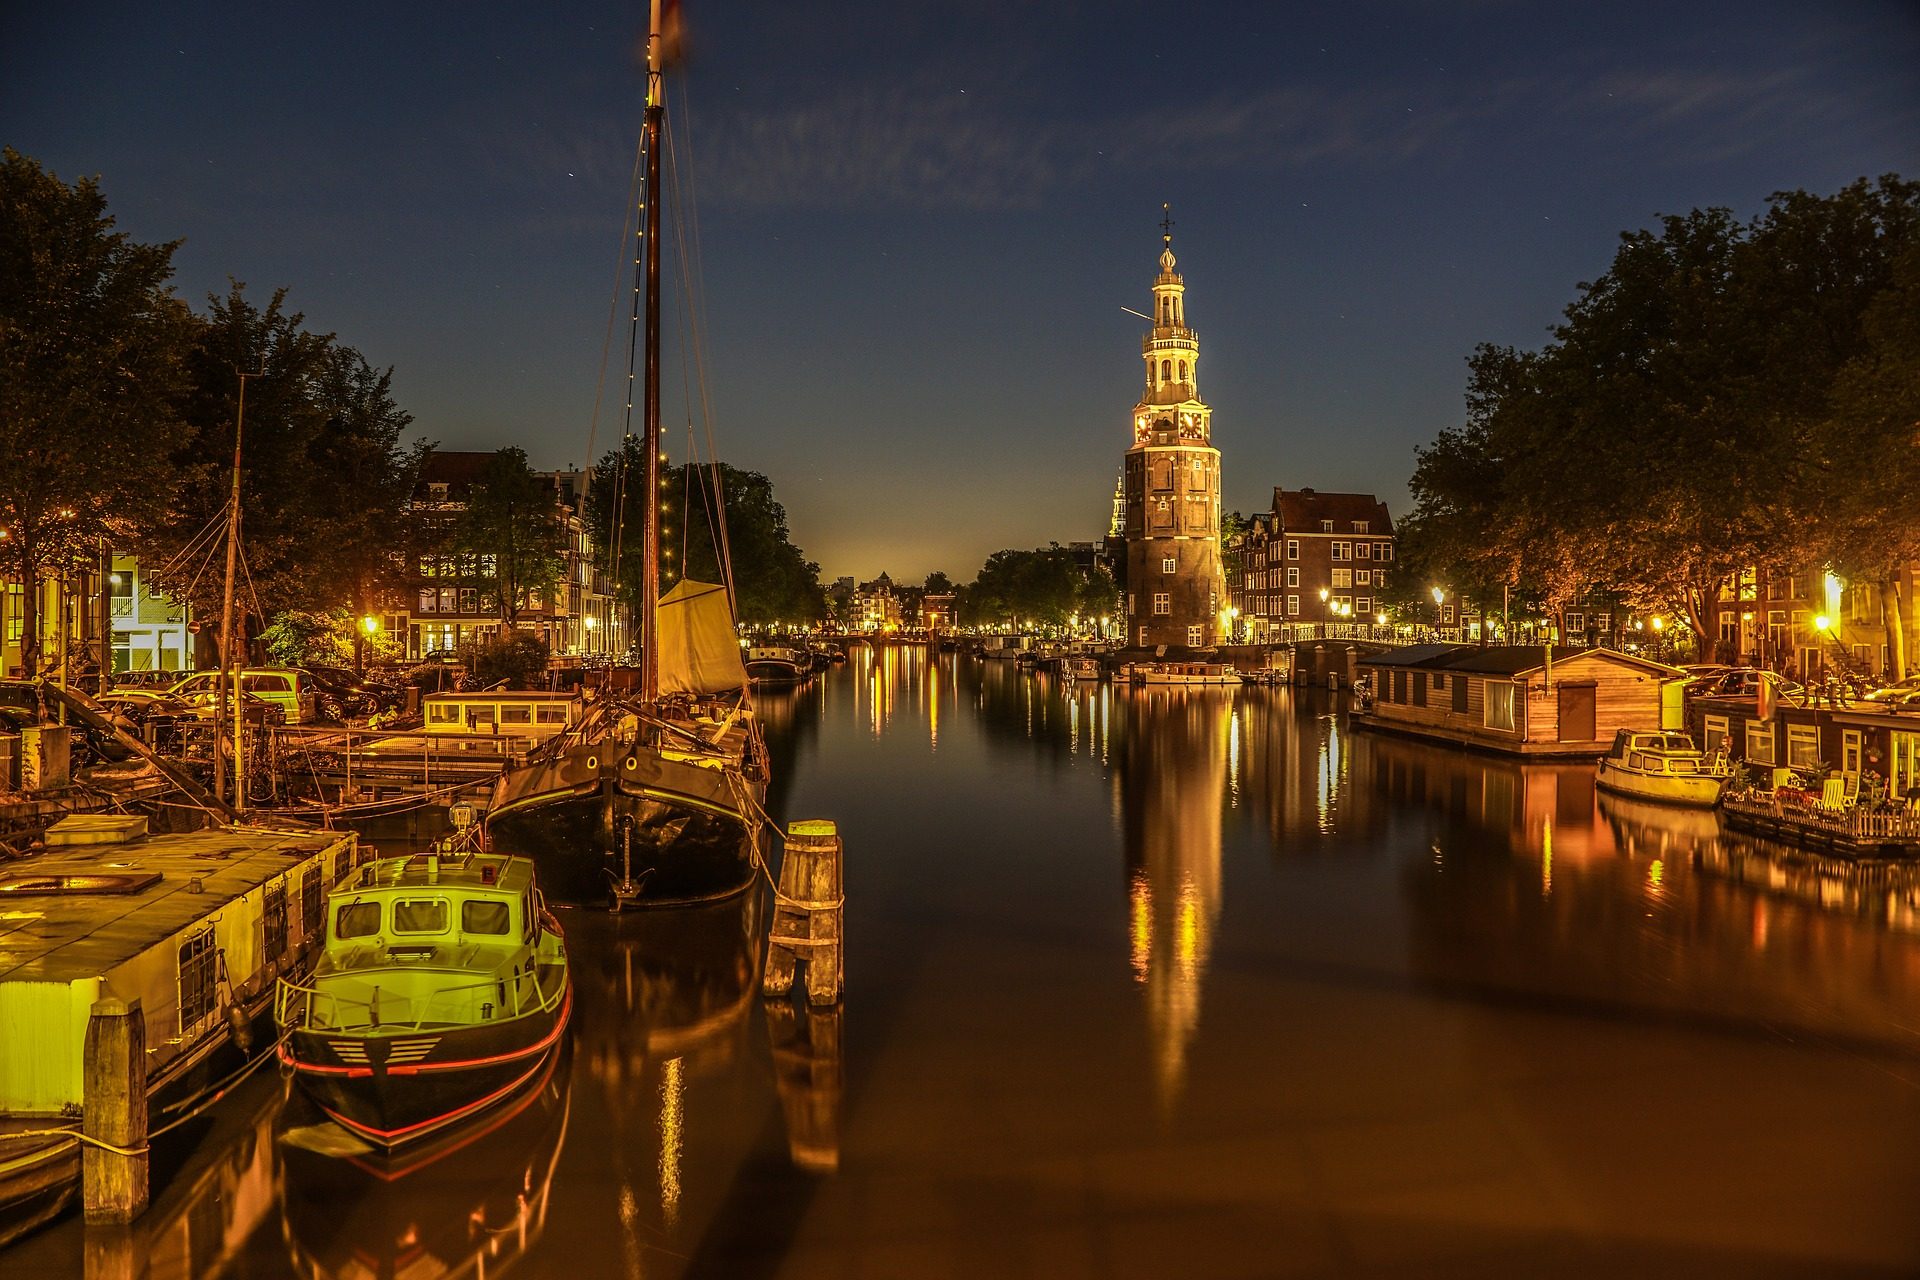 Amsterdam Lichtfestival günstige Bootstour durch die Grachten ab 19,90€ -